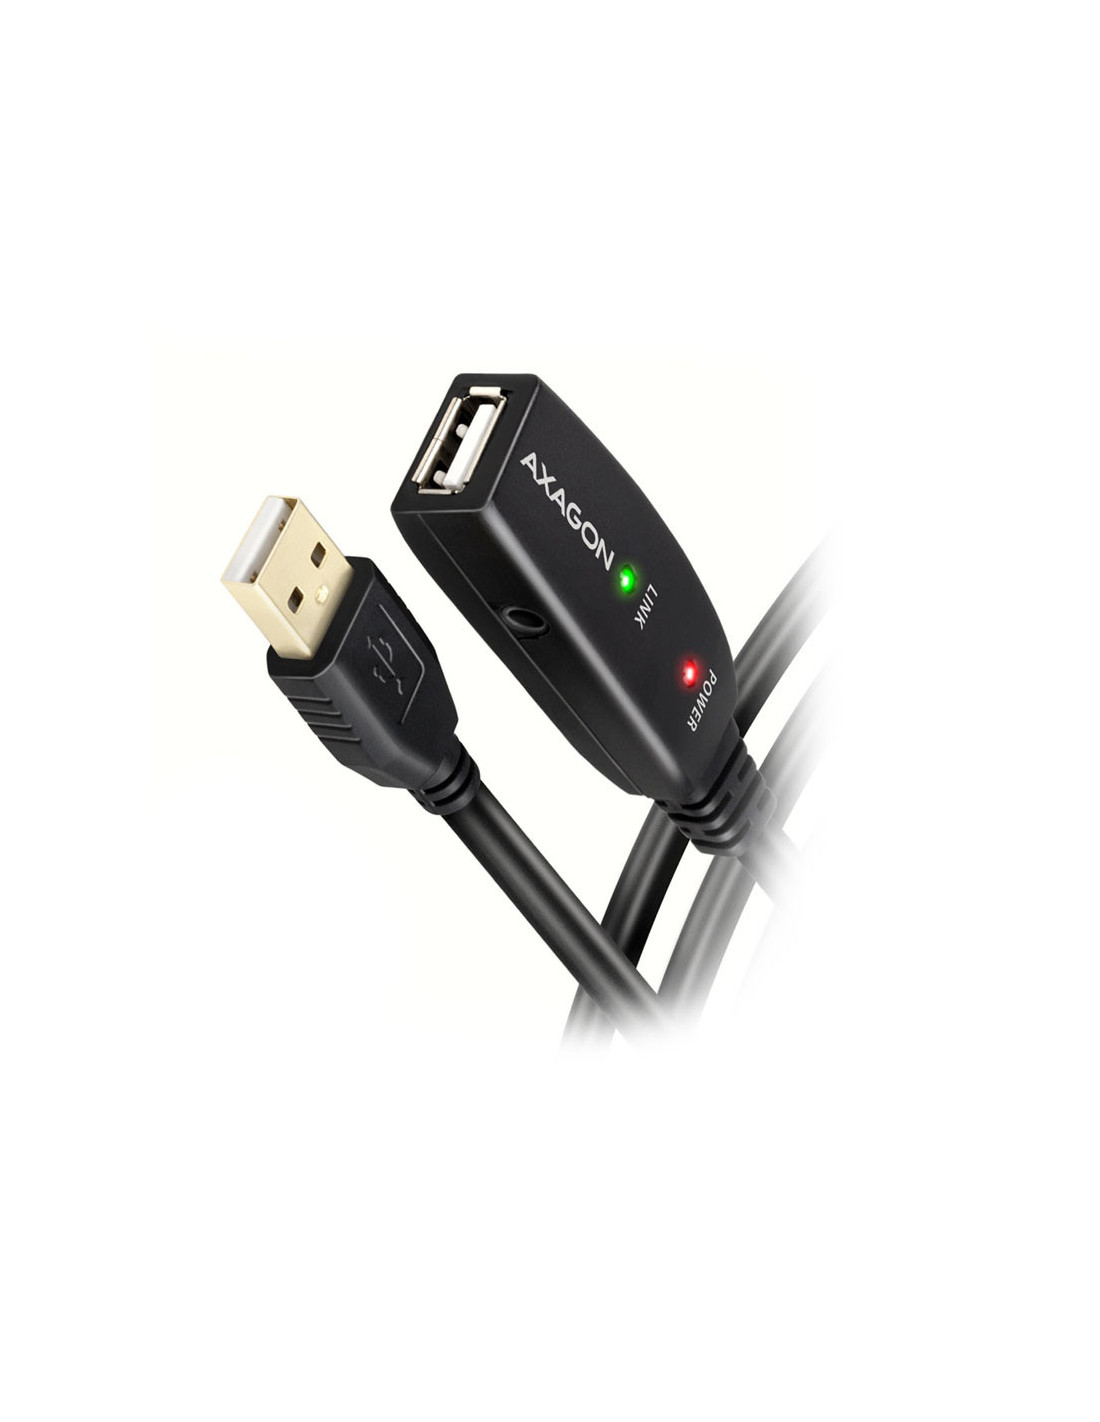 AXAGÓN ADR-220 cable alargador USB 2.0 activo, USB-A macho/hembra - 20m